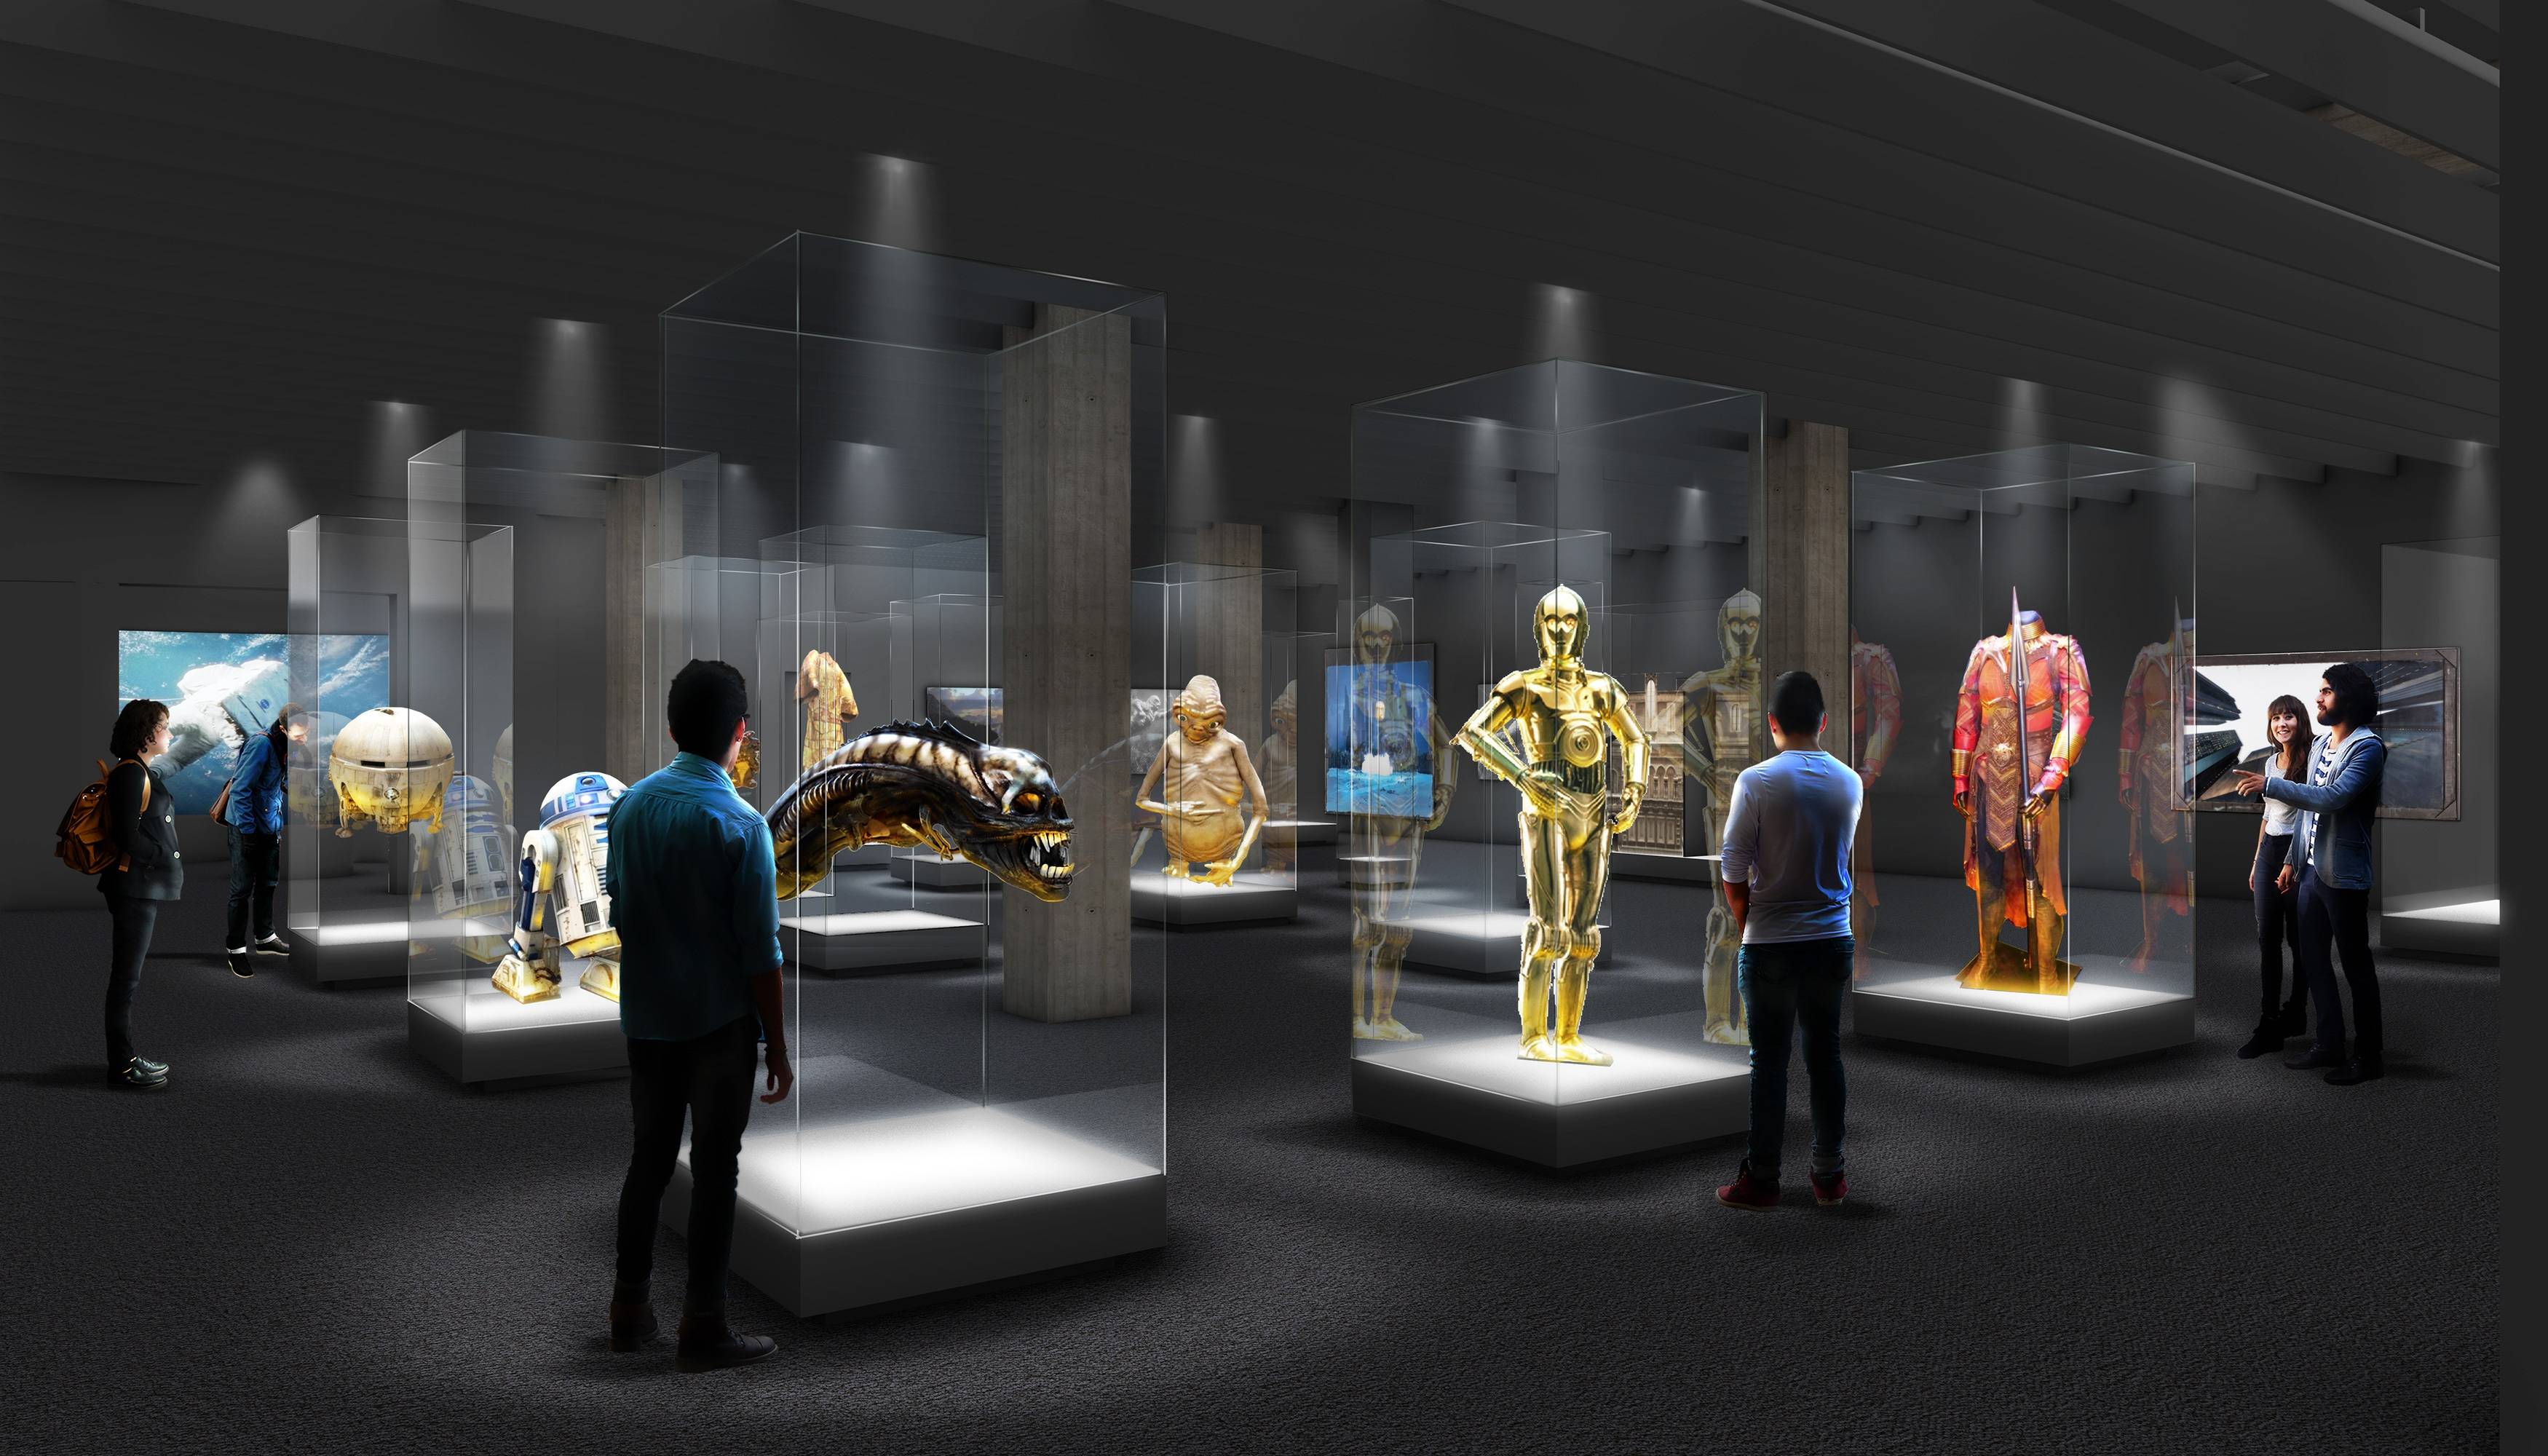 图片展示了一个现代博物馆内部，参观者正在观看展示的各种展品，包括金色机器人模型和其他多样的物品。